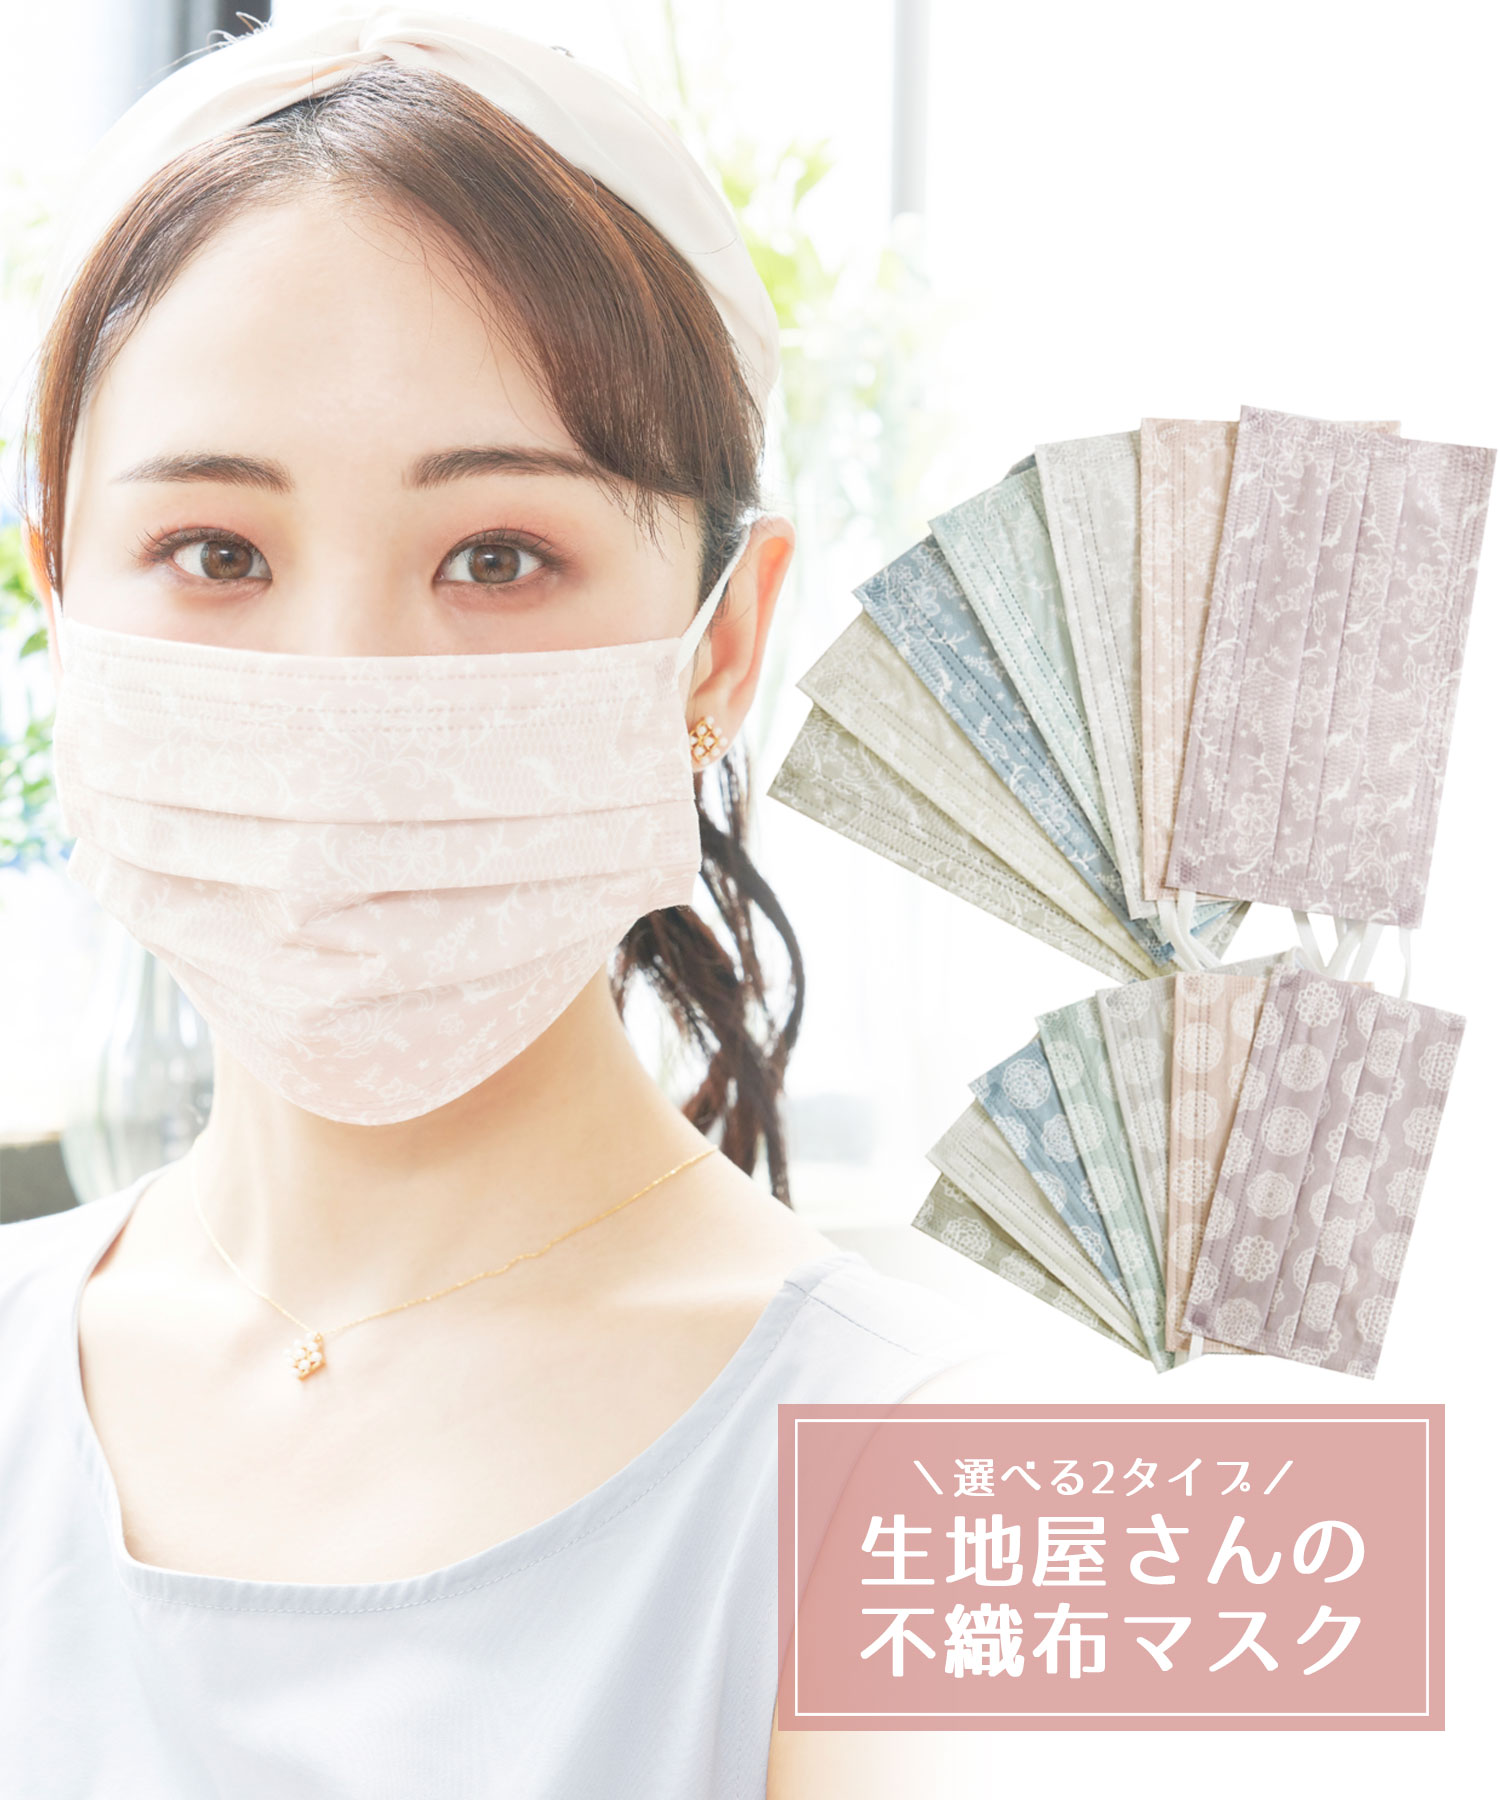 生地屋さんの不織布マスク7柄セット 雑貨 公式 Muk Online Shop 人気アクセサリー ジュエリー通販